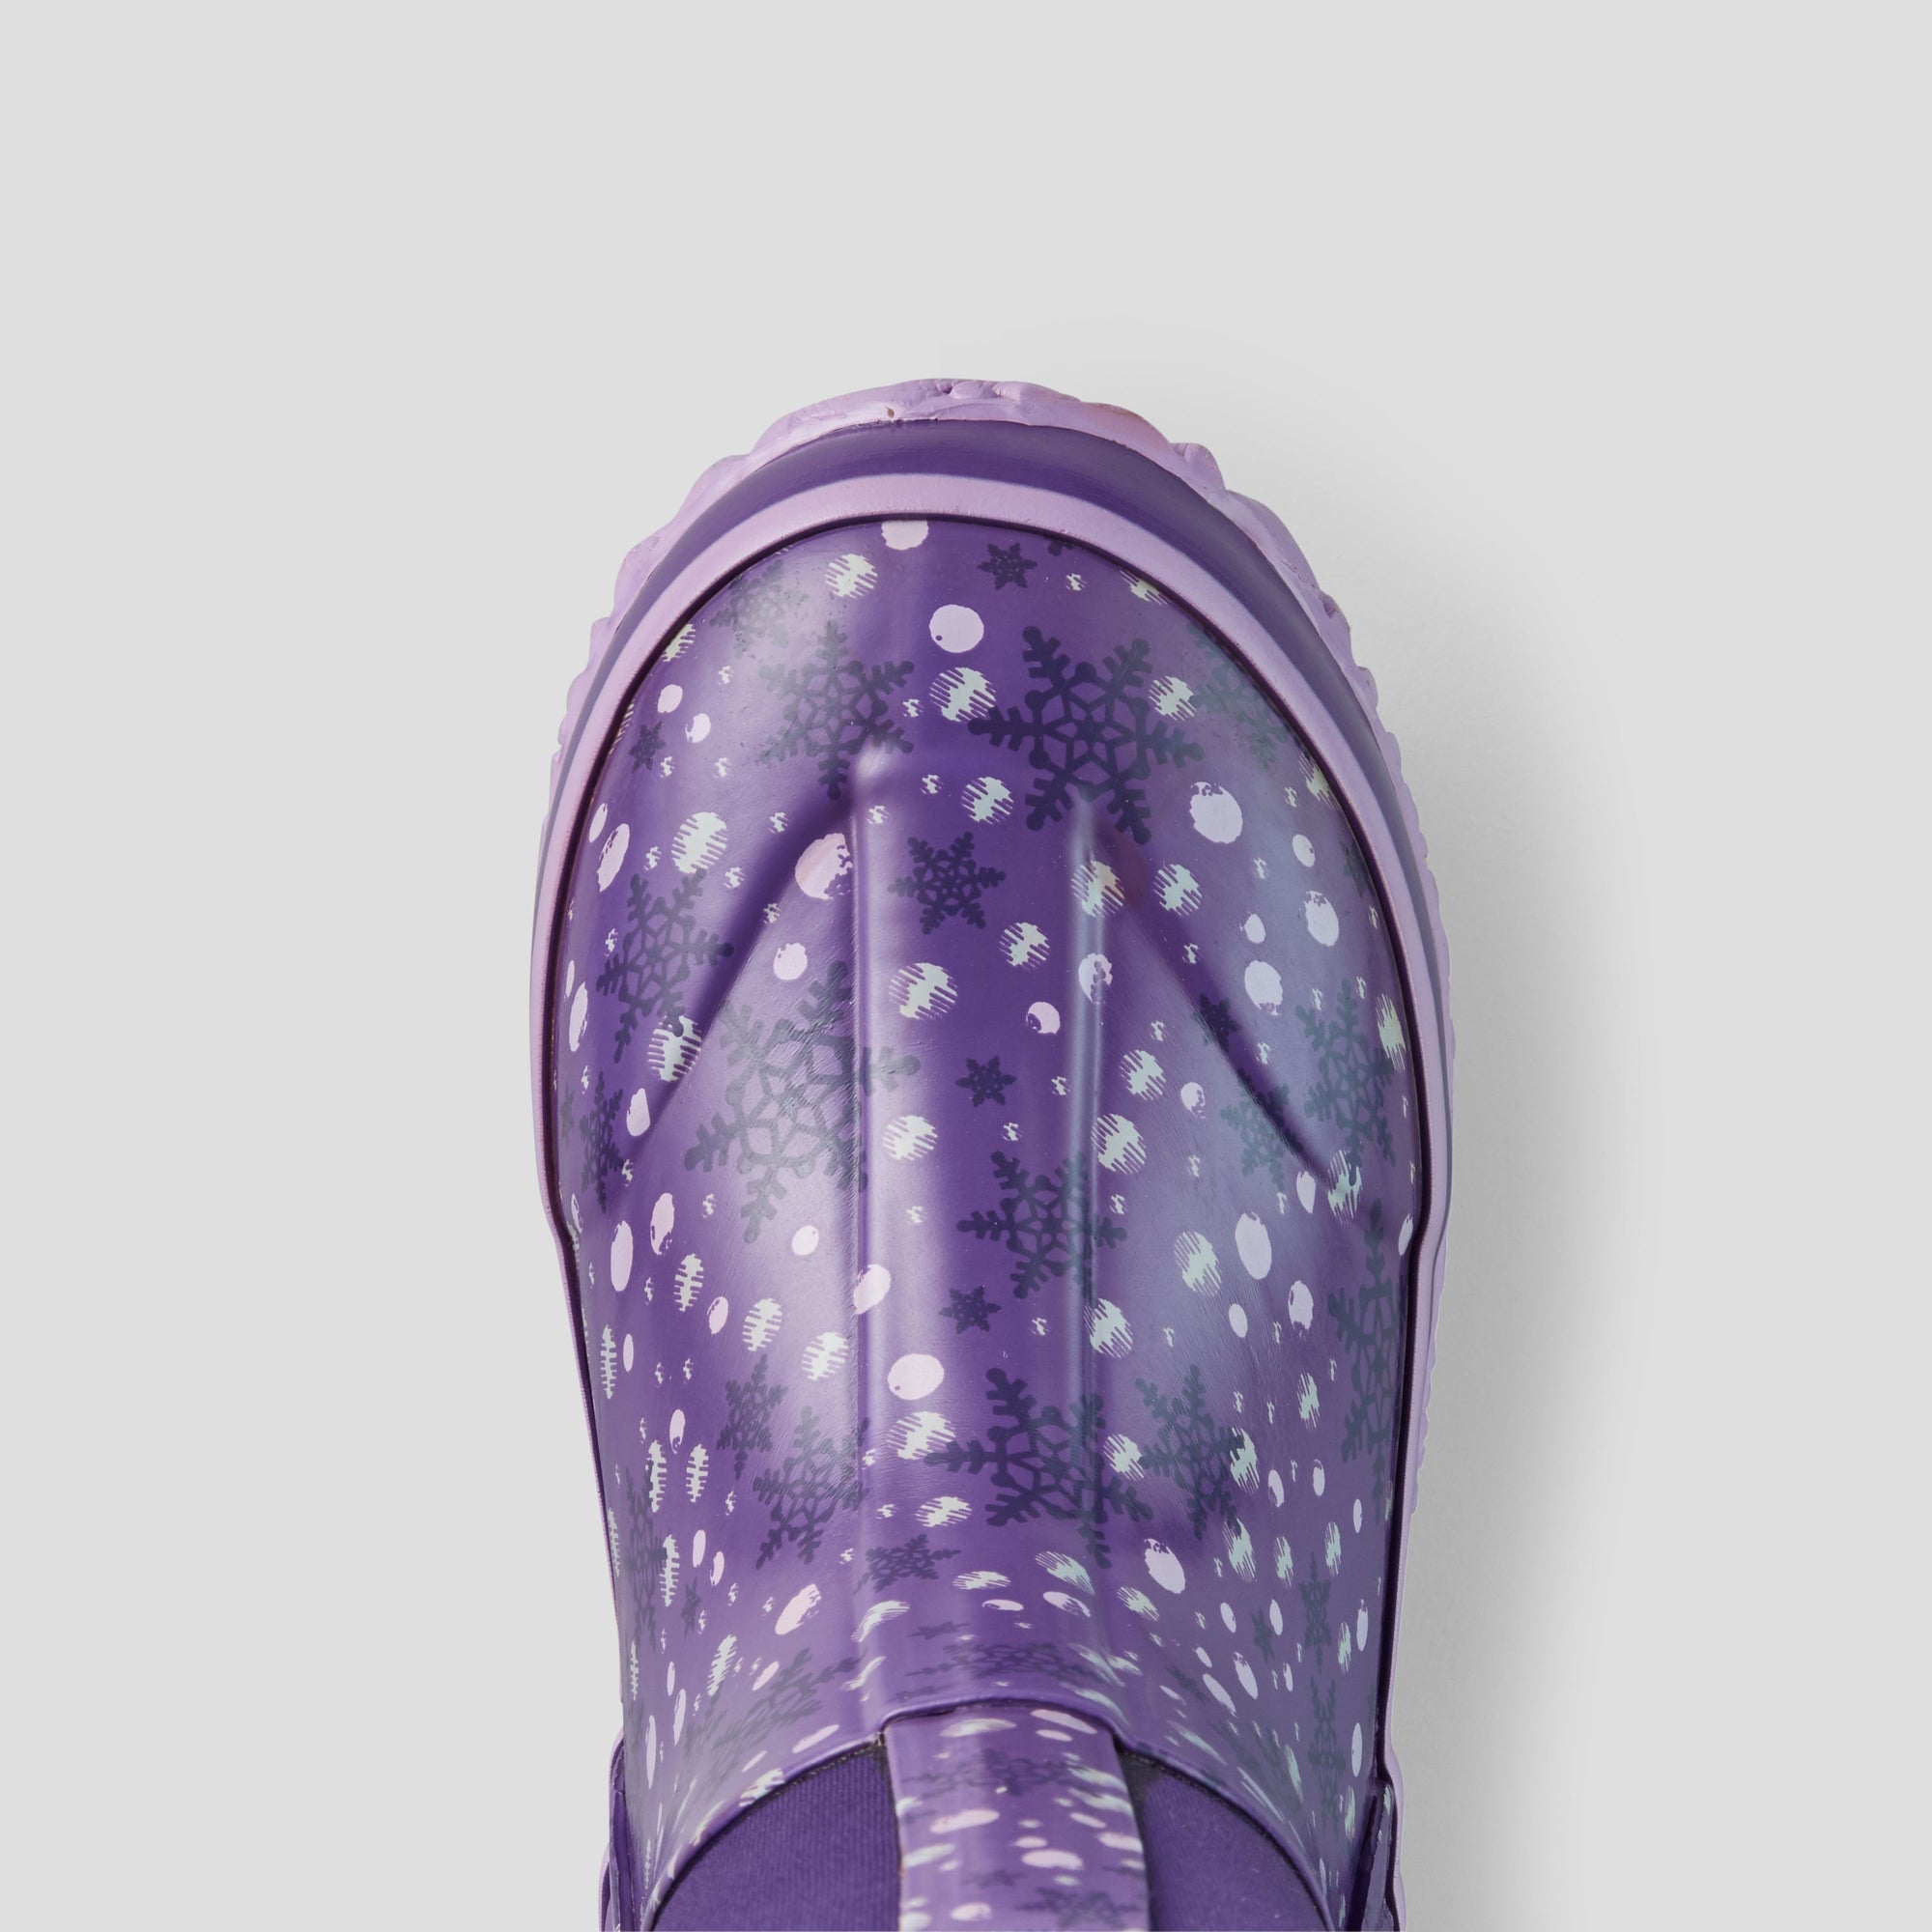 Snowglobe Neoprene Waterproof Winter Boot (Youth+) - Colour Purple